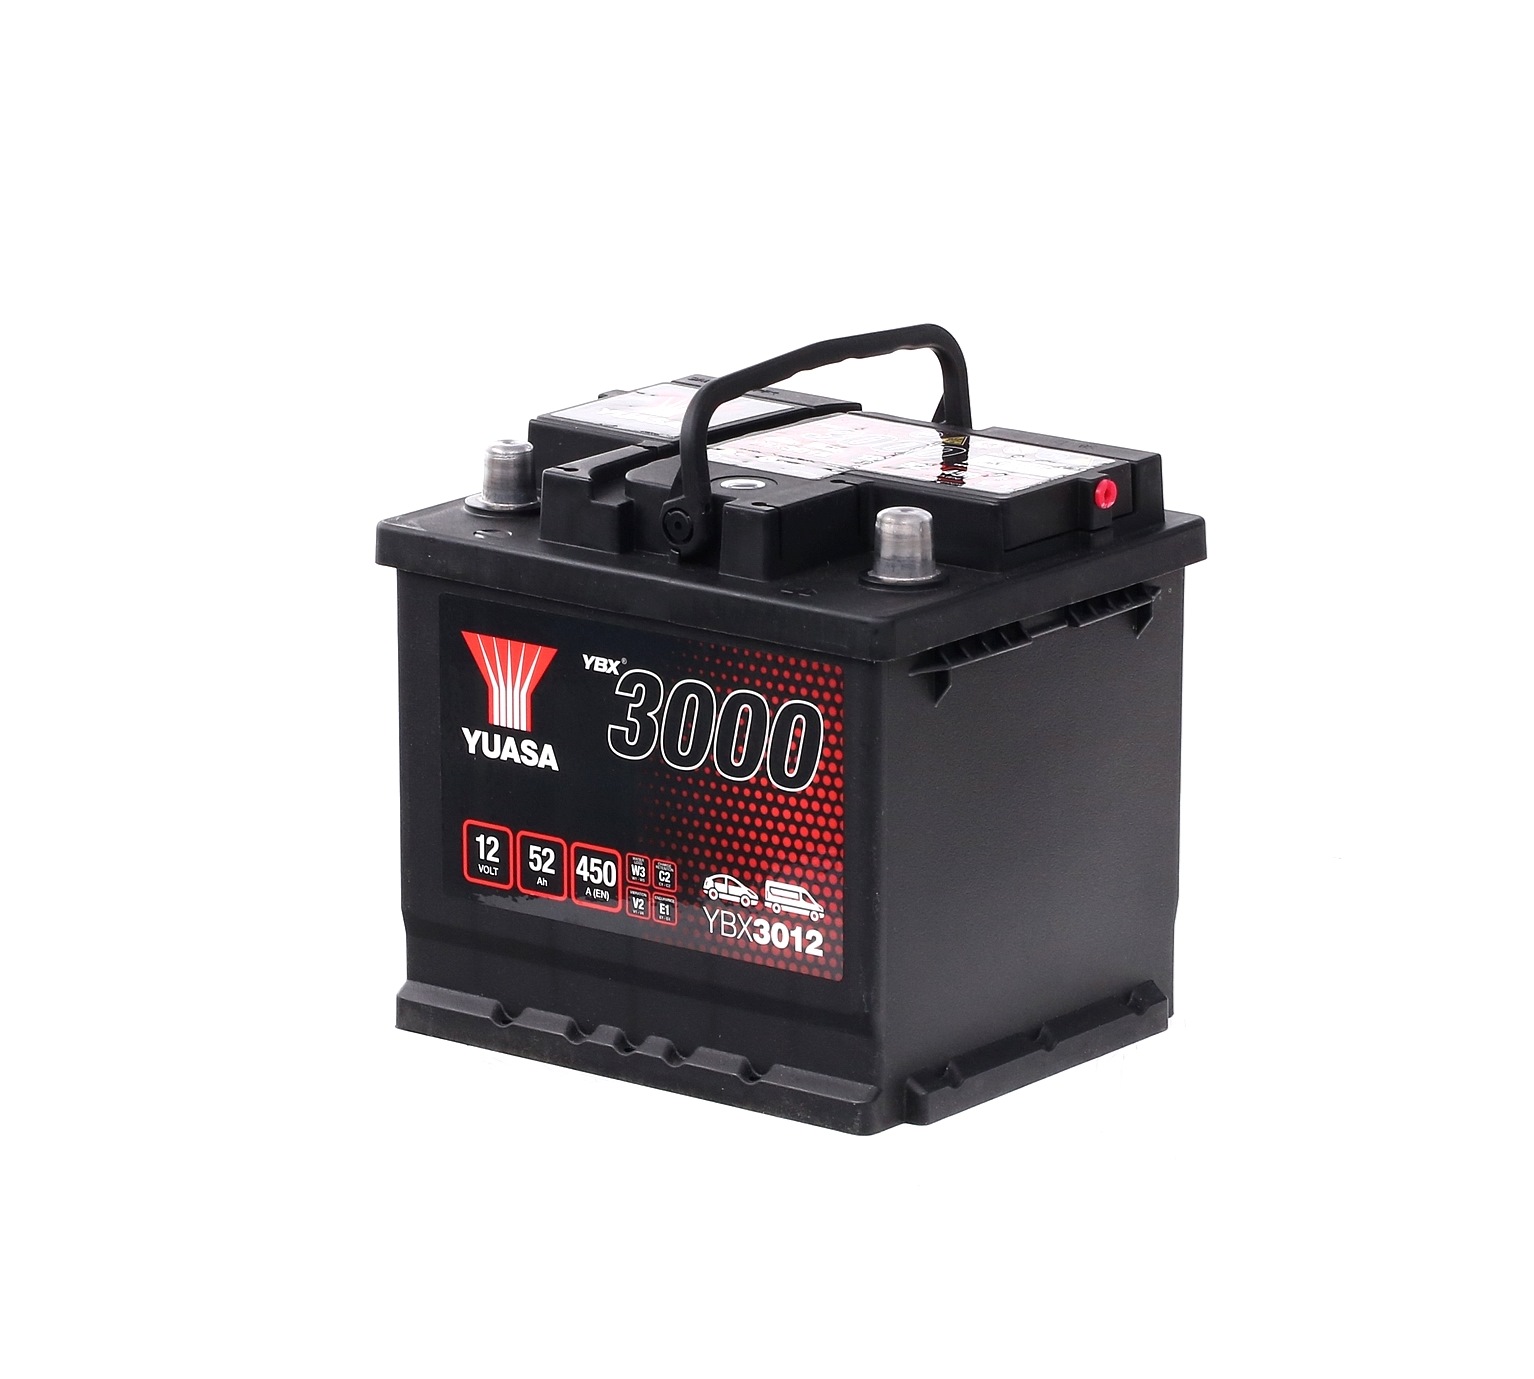 YUASA YBX3000 YBX3012 Batteria 12V 52Ah 450A con maniglie, con indicatore stato carica, Accumulatore piombo-acido